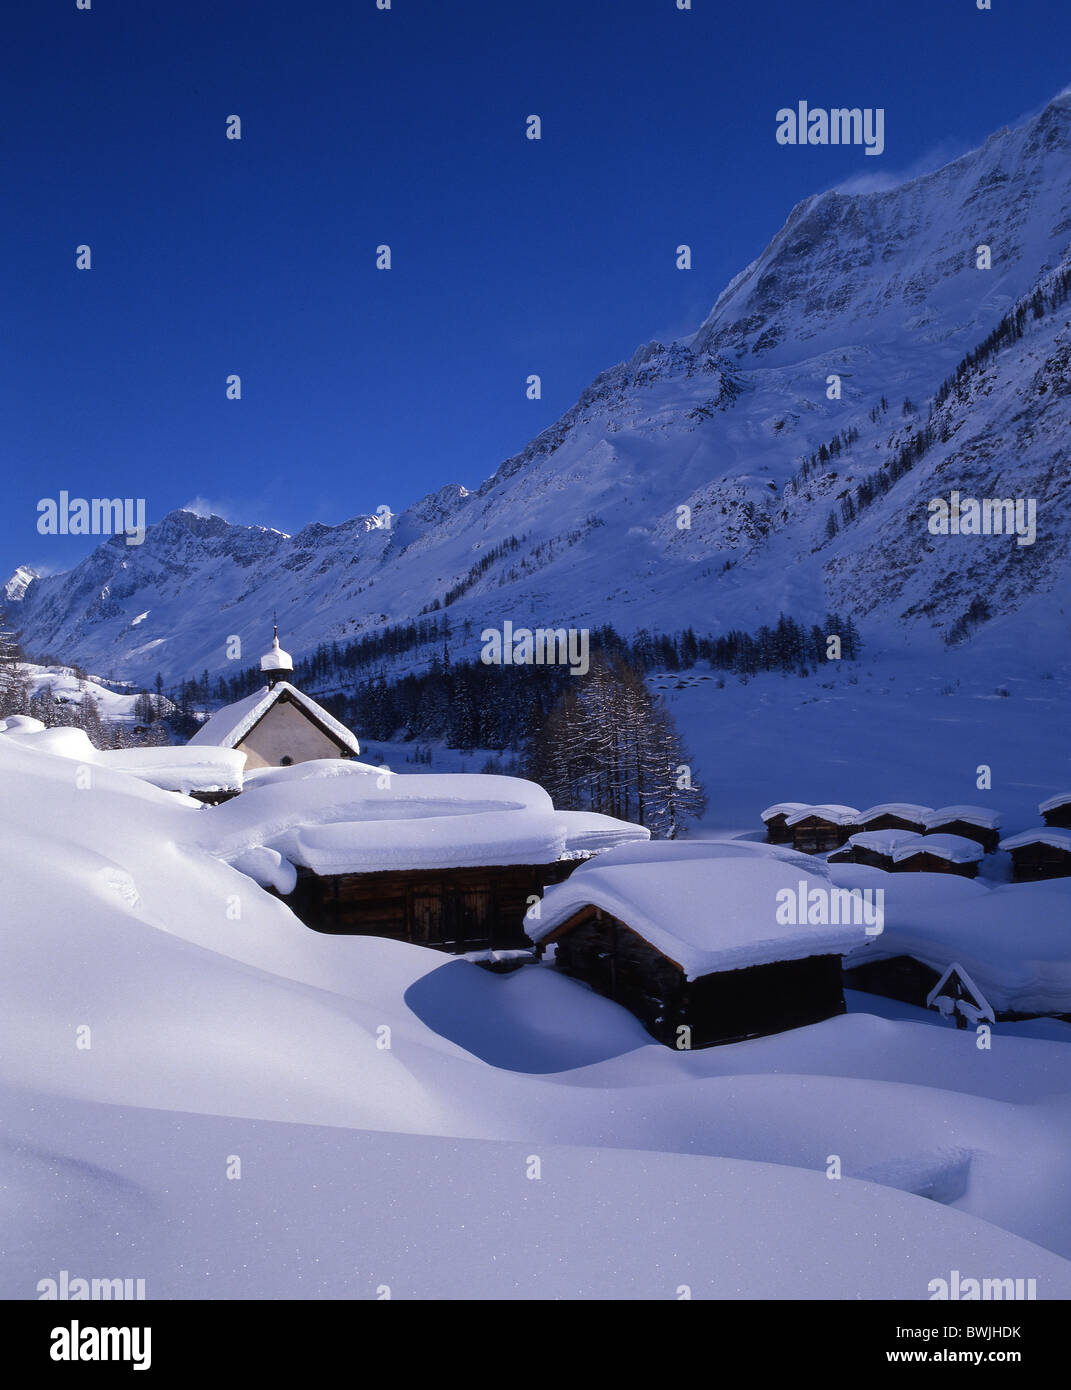 Frazione di Lotschental insediamento Kuhmad snowbound coperto di neve fresca neve nevicata neve montagna villaggio vall Foto Stock